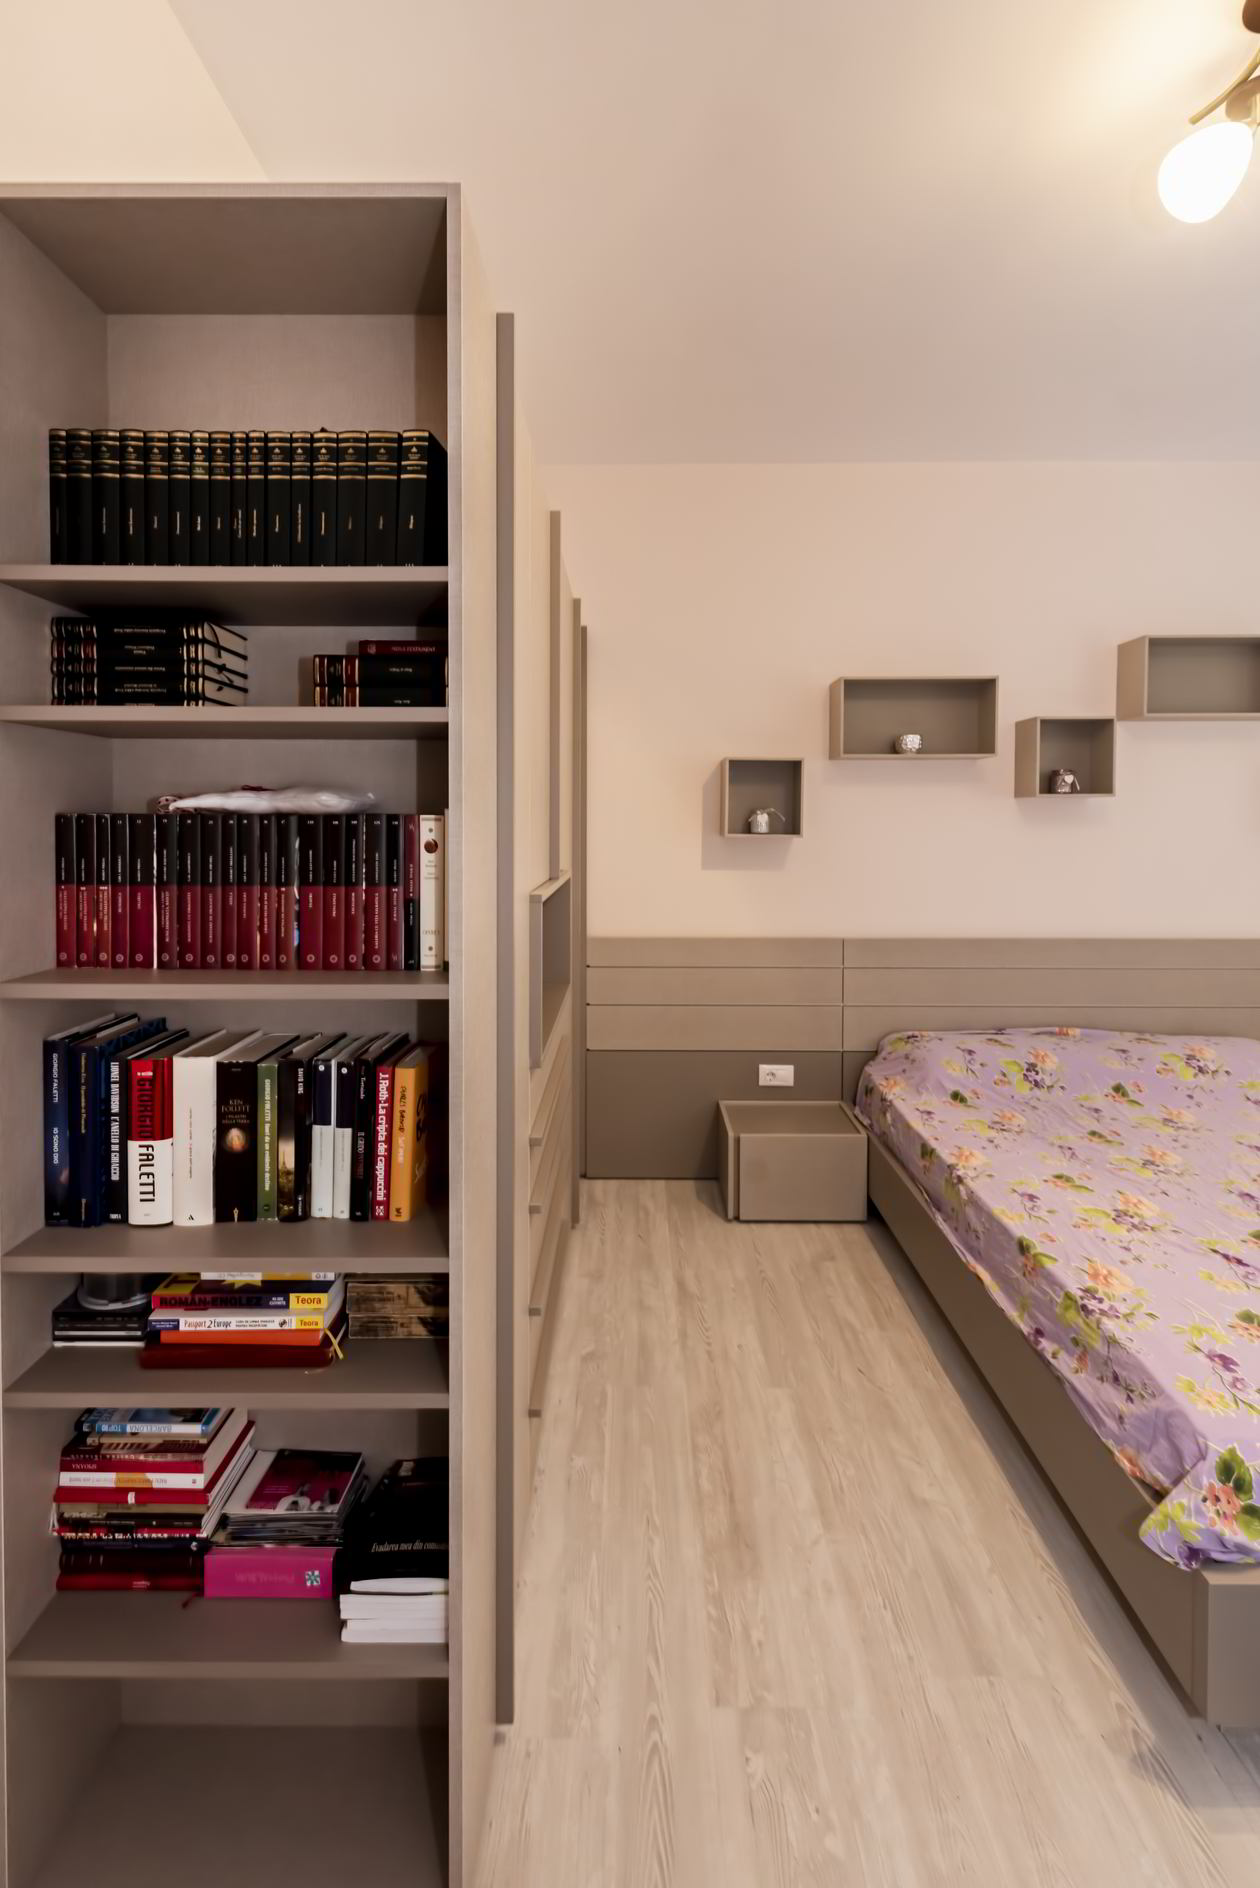 Proiect mobila Dormitor individual, cu pat central, dulap, compozitie mica pentru TV, birou integrat, 16m², realizat 20 Ianuarie 2017 COD.4995